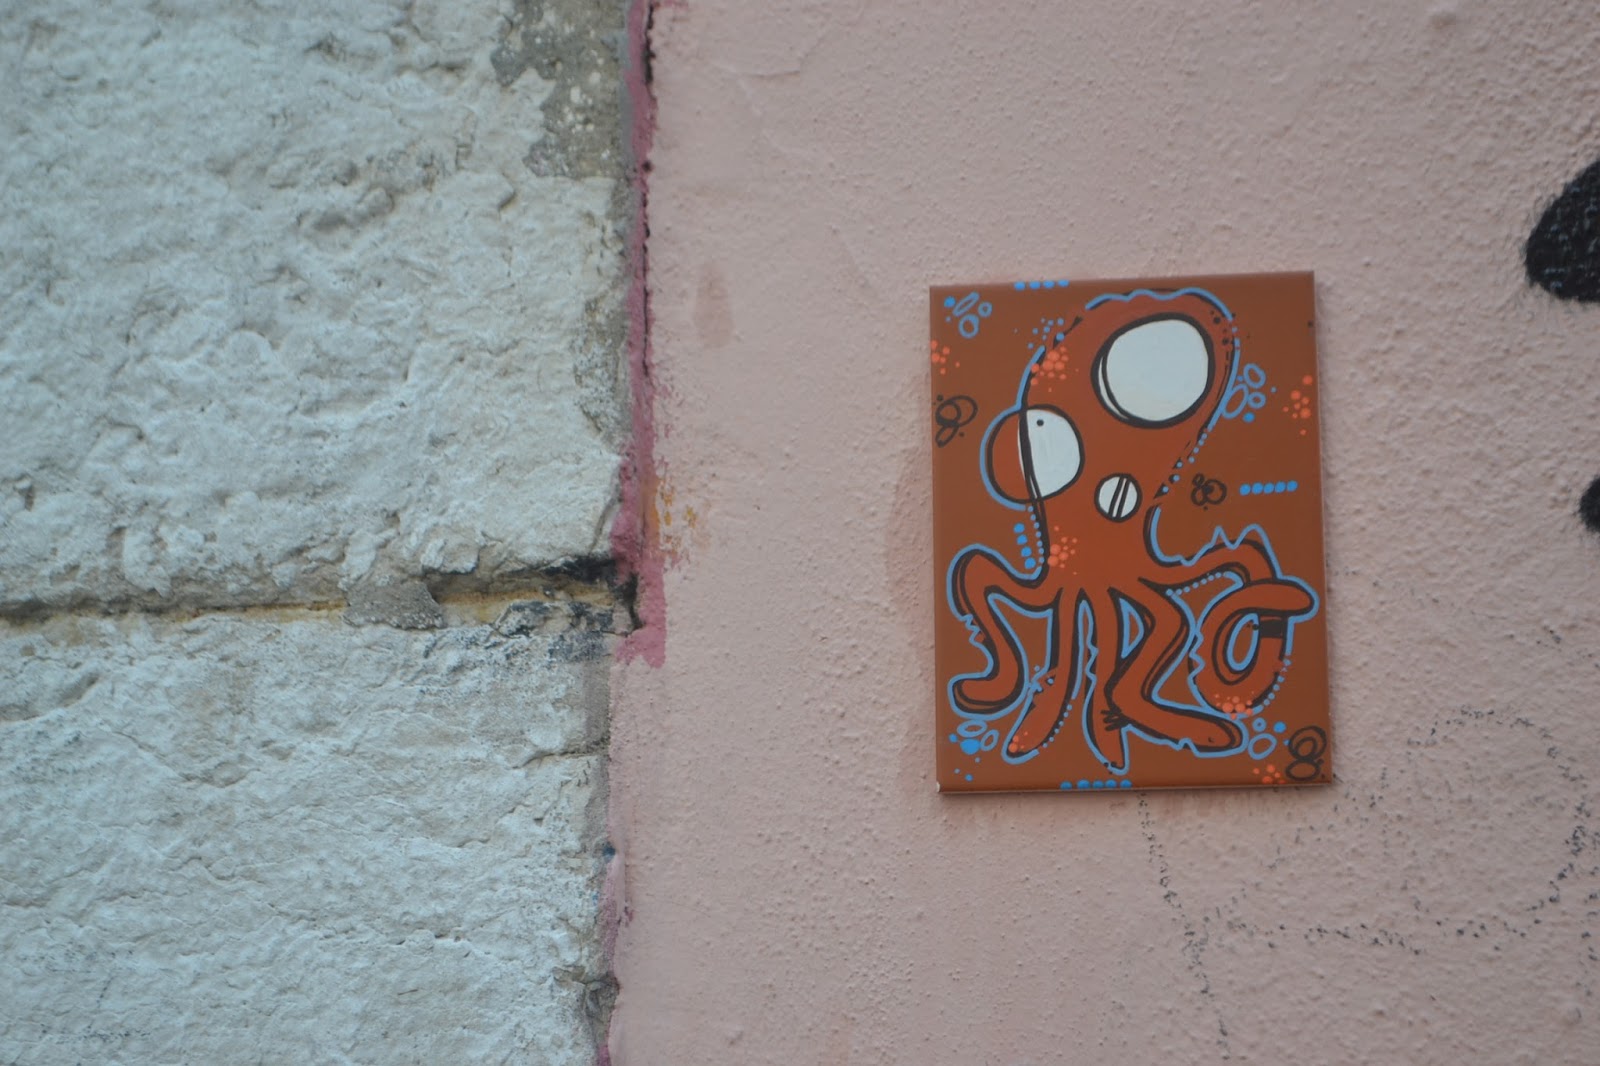 Lisbon street art tour